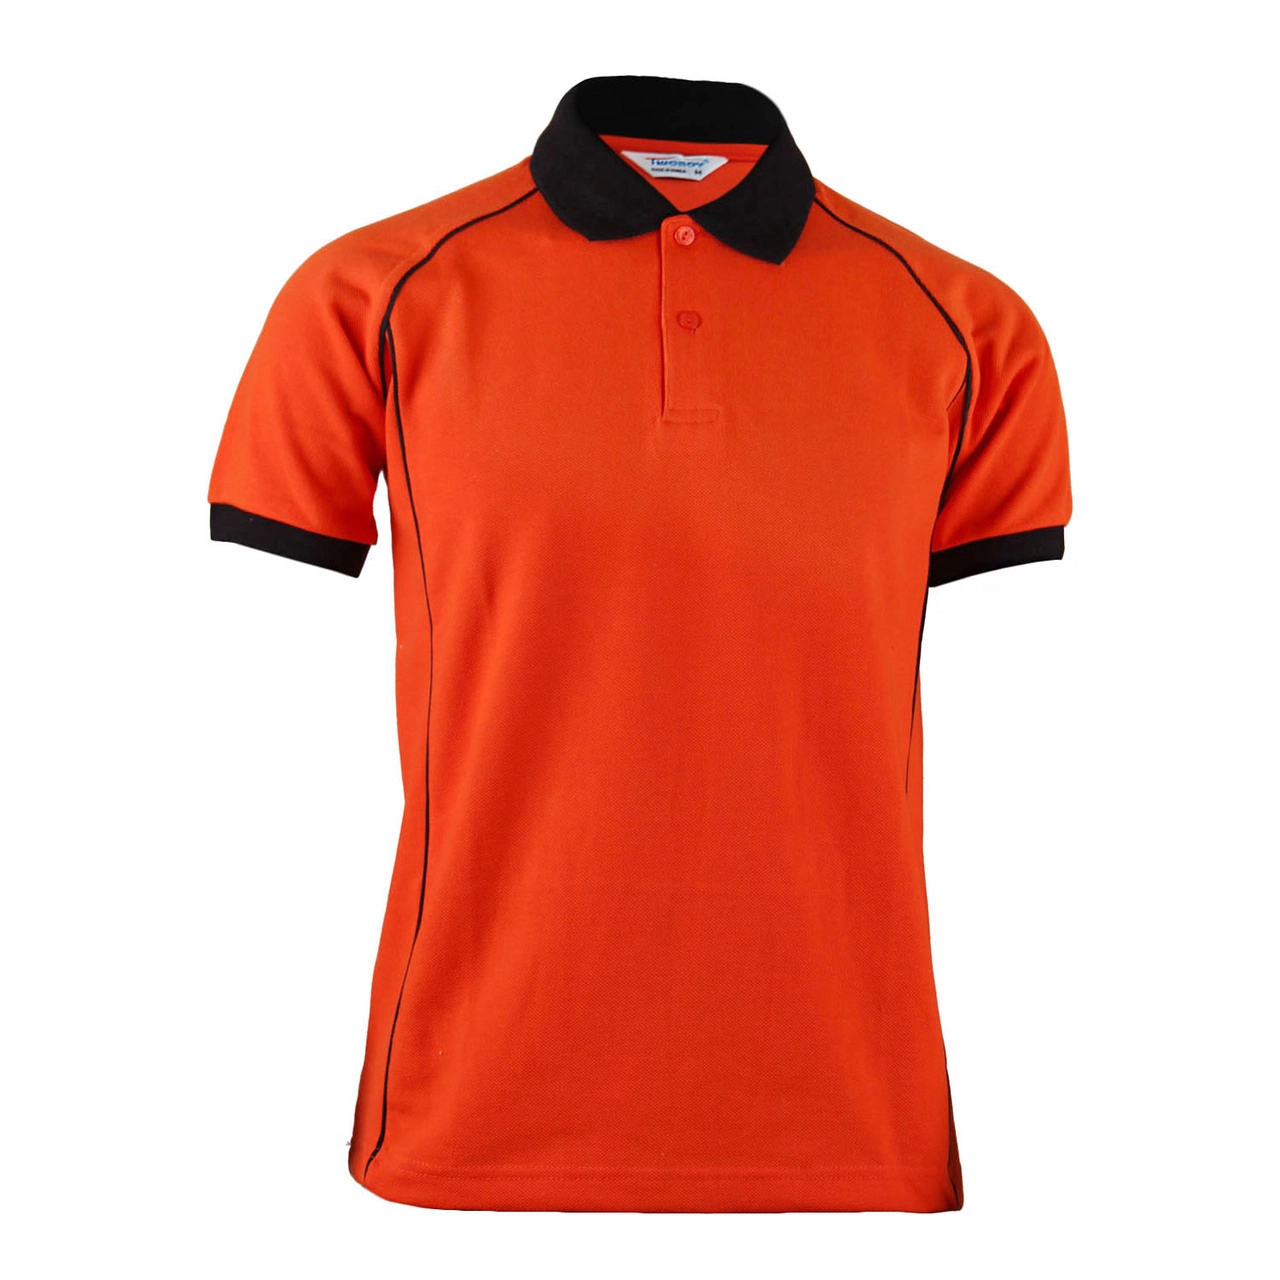 Fashion Cotton Polo Orange Shirt Black Bangladesh Factory